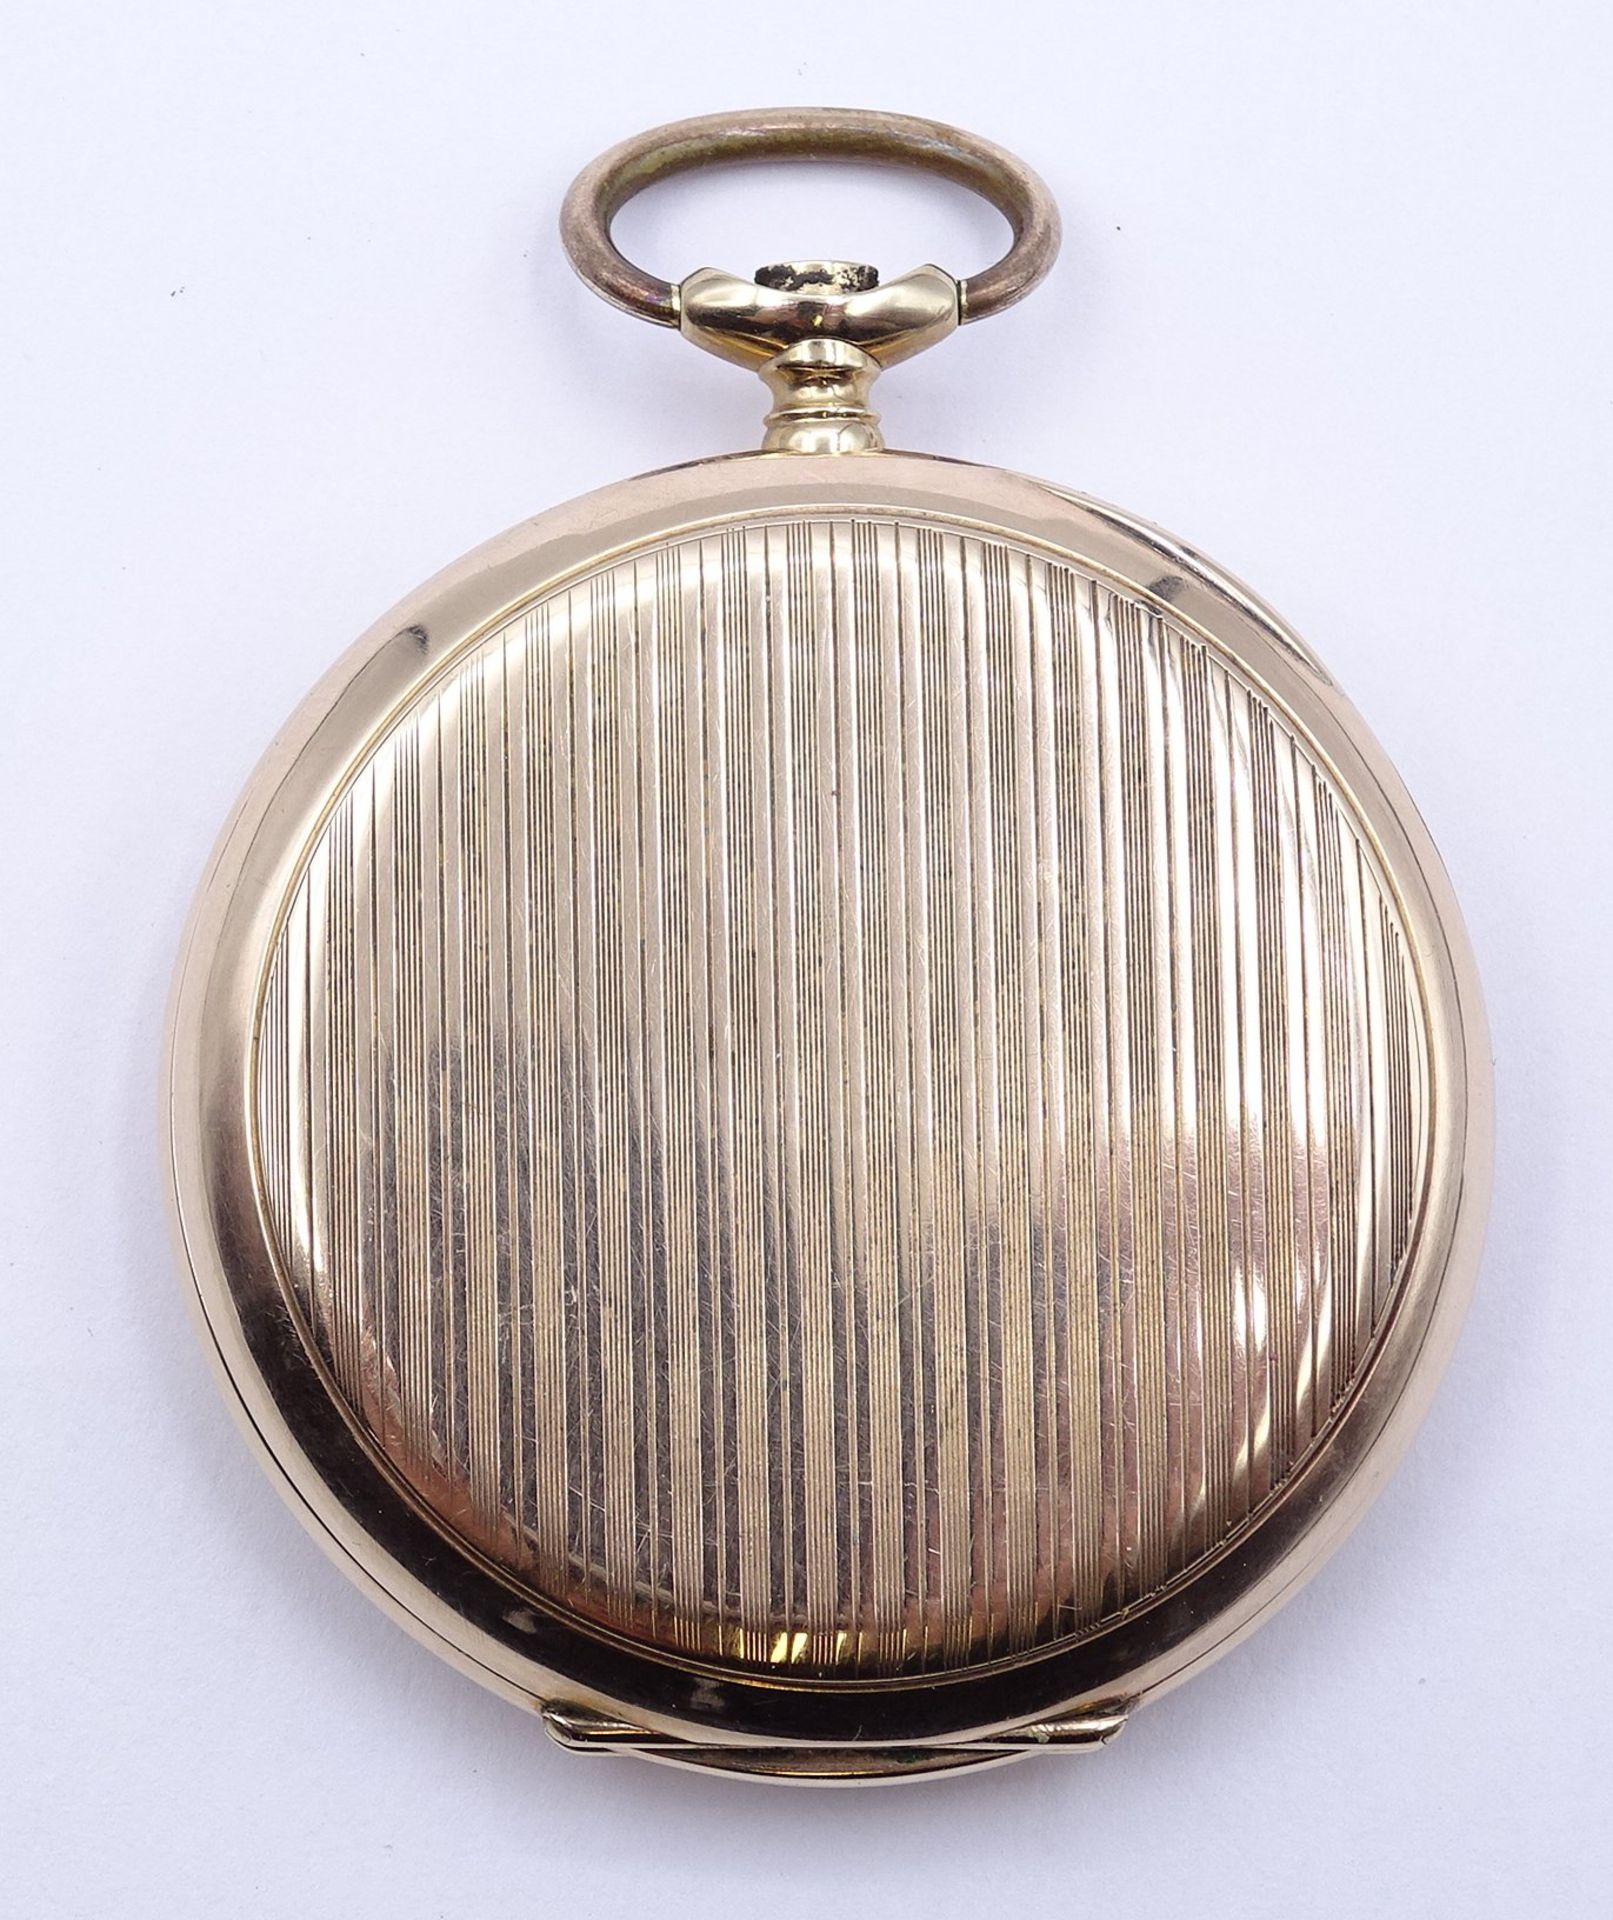 Herren Taschenuhr B.W.C. Chronometre, mechanisch, Krone fehlt, Funktion nicht überprüft, D. 49mm, B - Bild 6 aus 6